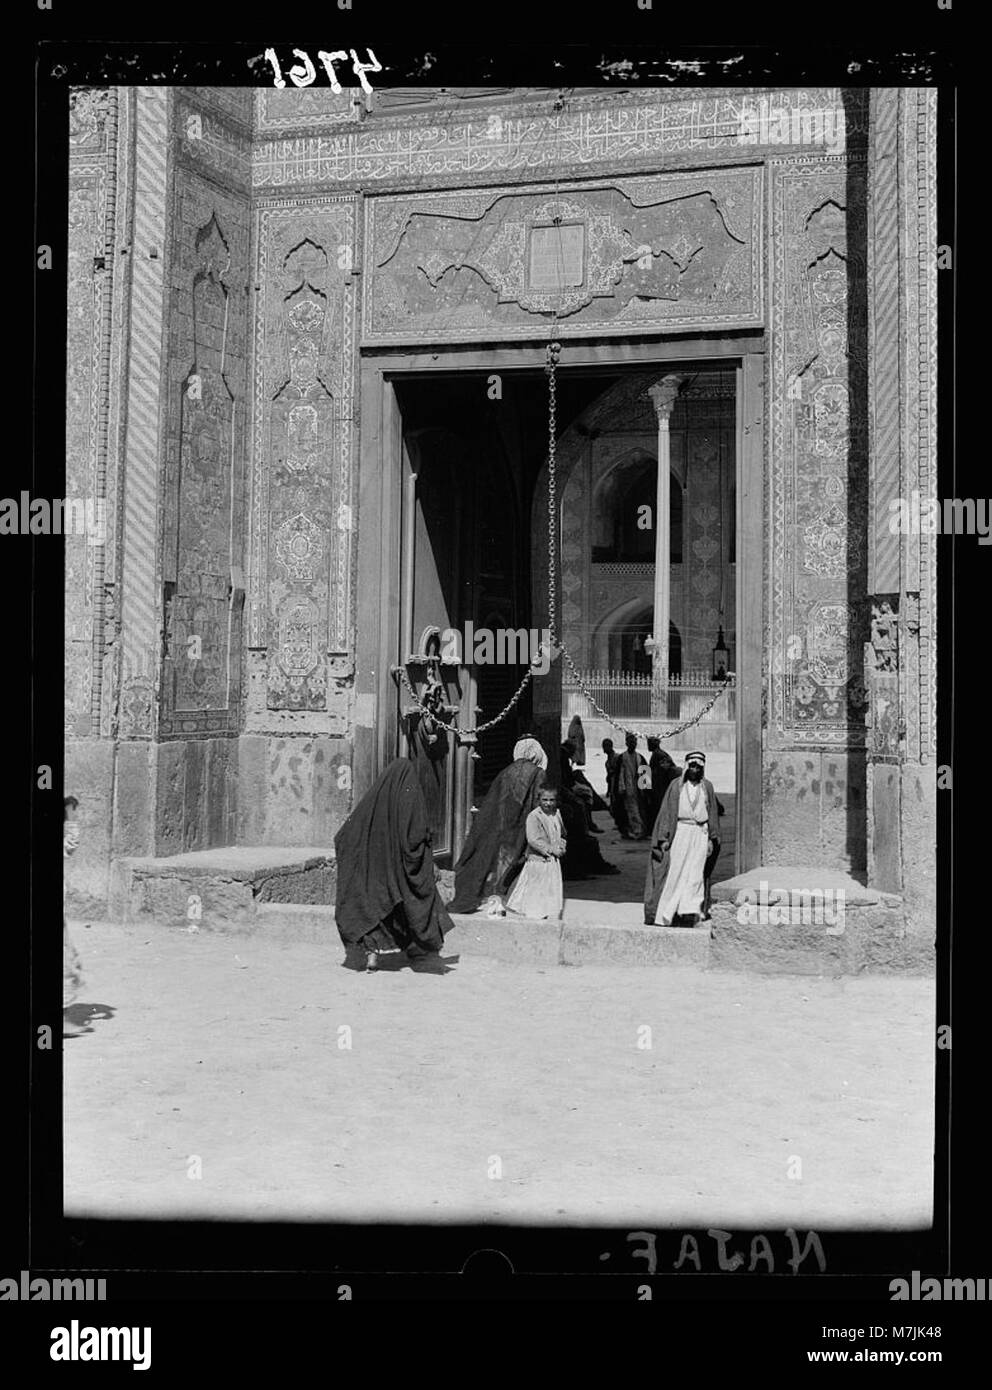 Irak. Nejaf. Erste Heilige Stadt der schiitischen Moslems (d. h., Muslime). Moschee Eingang. Untere Partie mit schönen blauen Fliesen LOC 16162 matpc. Stockfoto